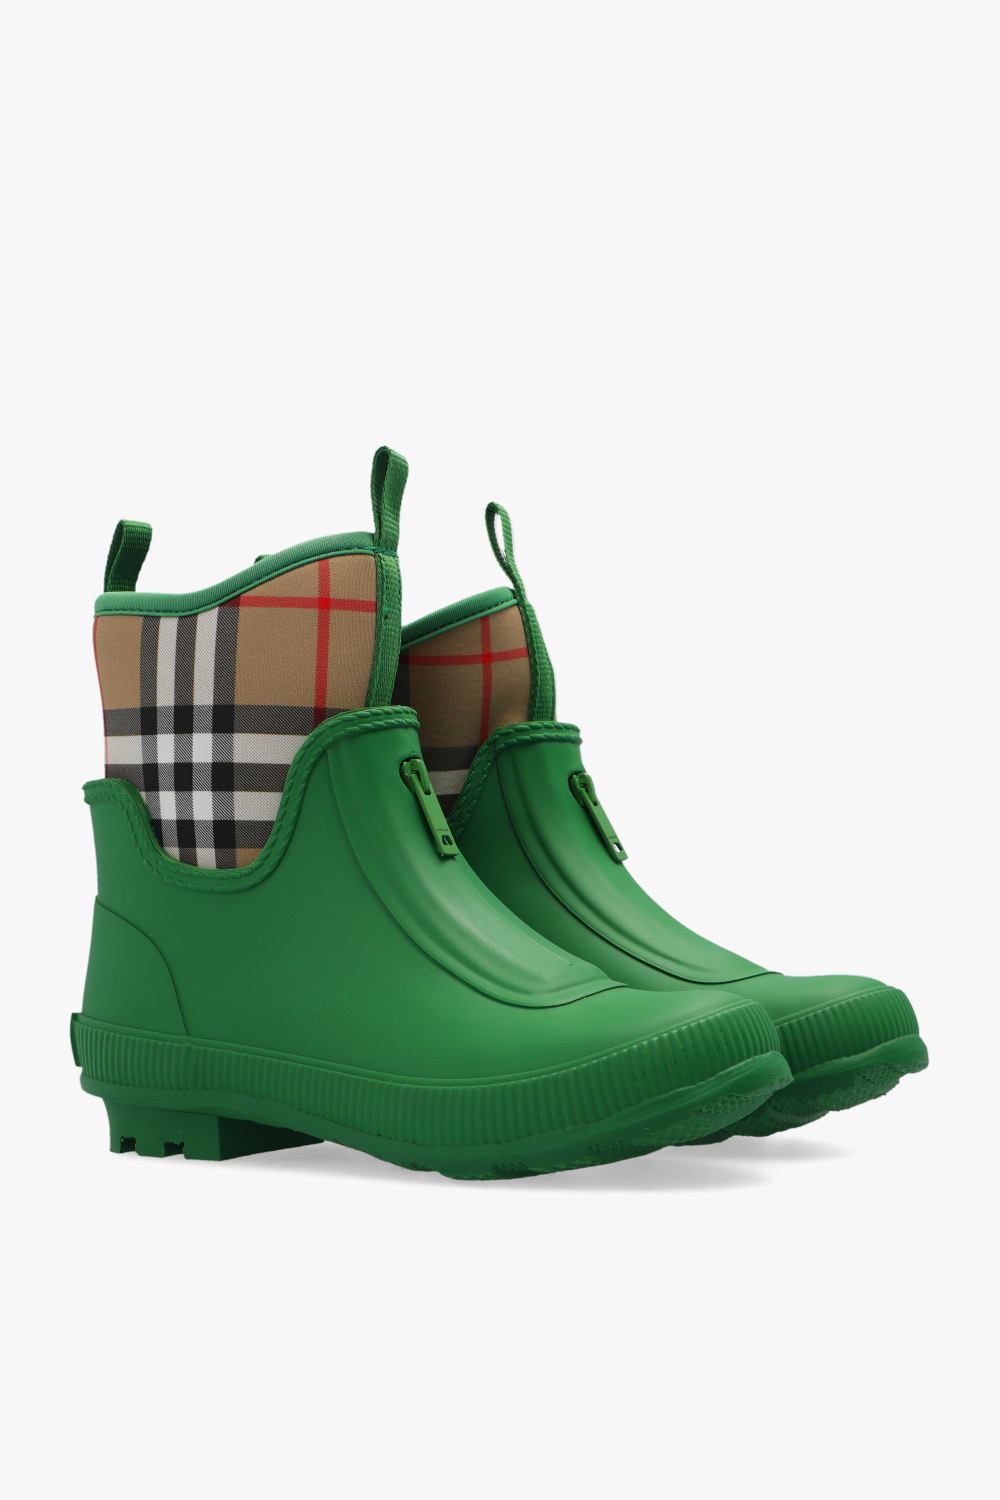 burberry kane Kids ‘Mini Flinton’ rain boots